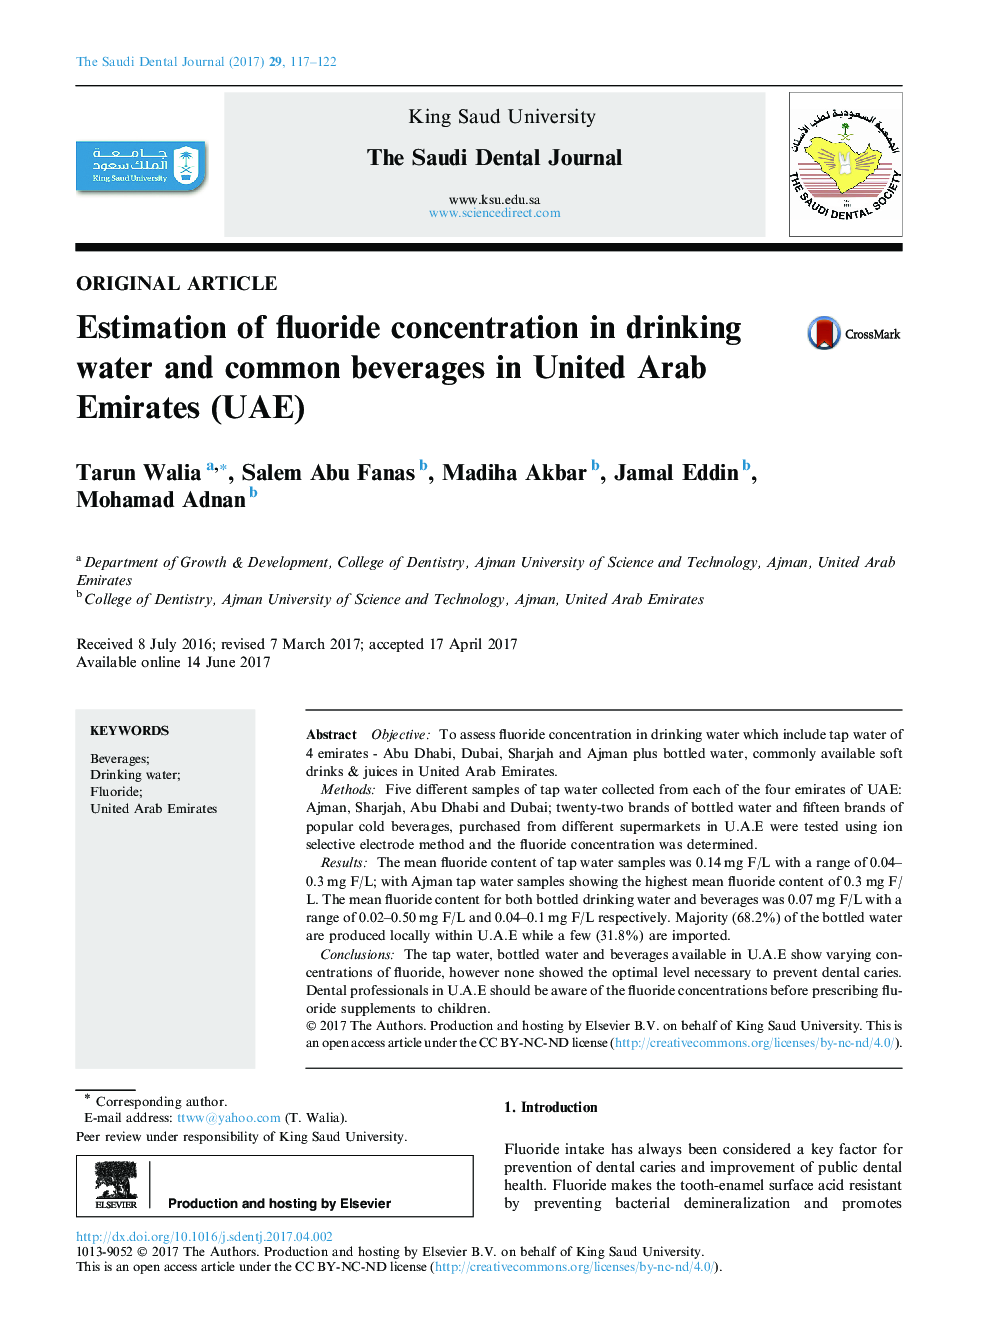 برآورد غلظت فلوراید در آب آشامیدنی و نوشیدنی های شایع در امارات متحده عربی 